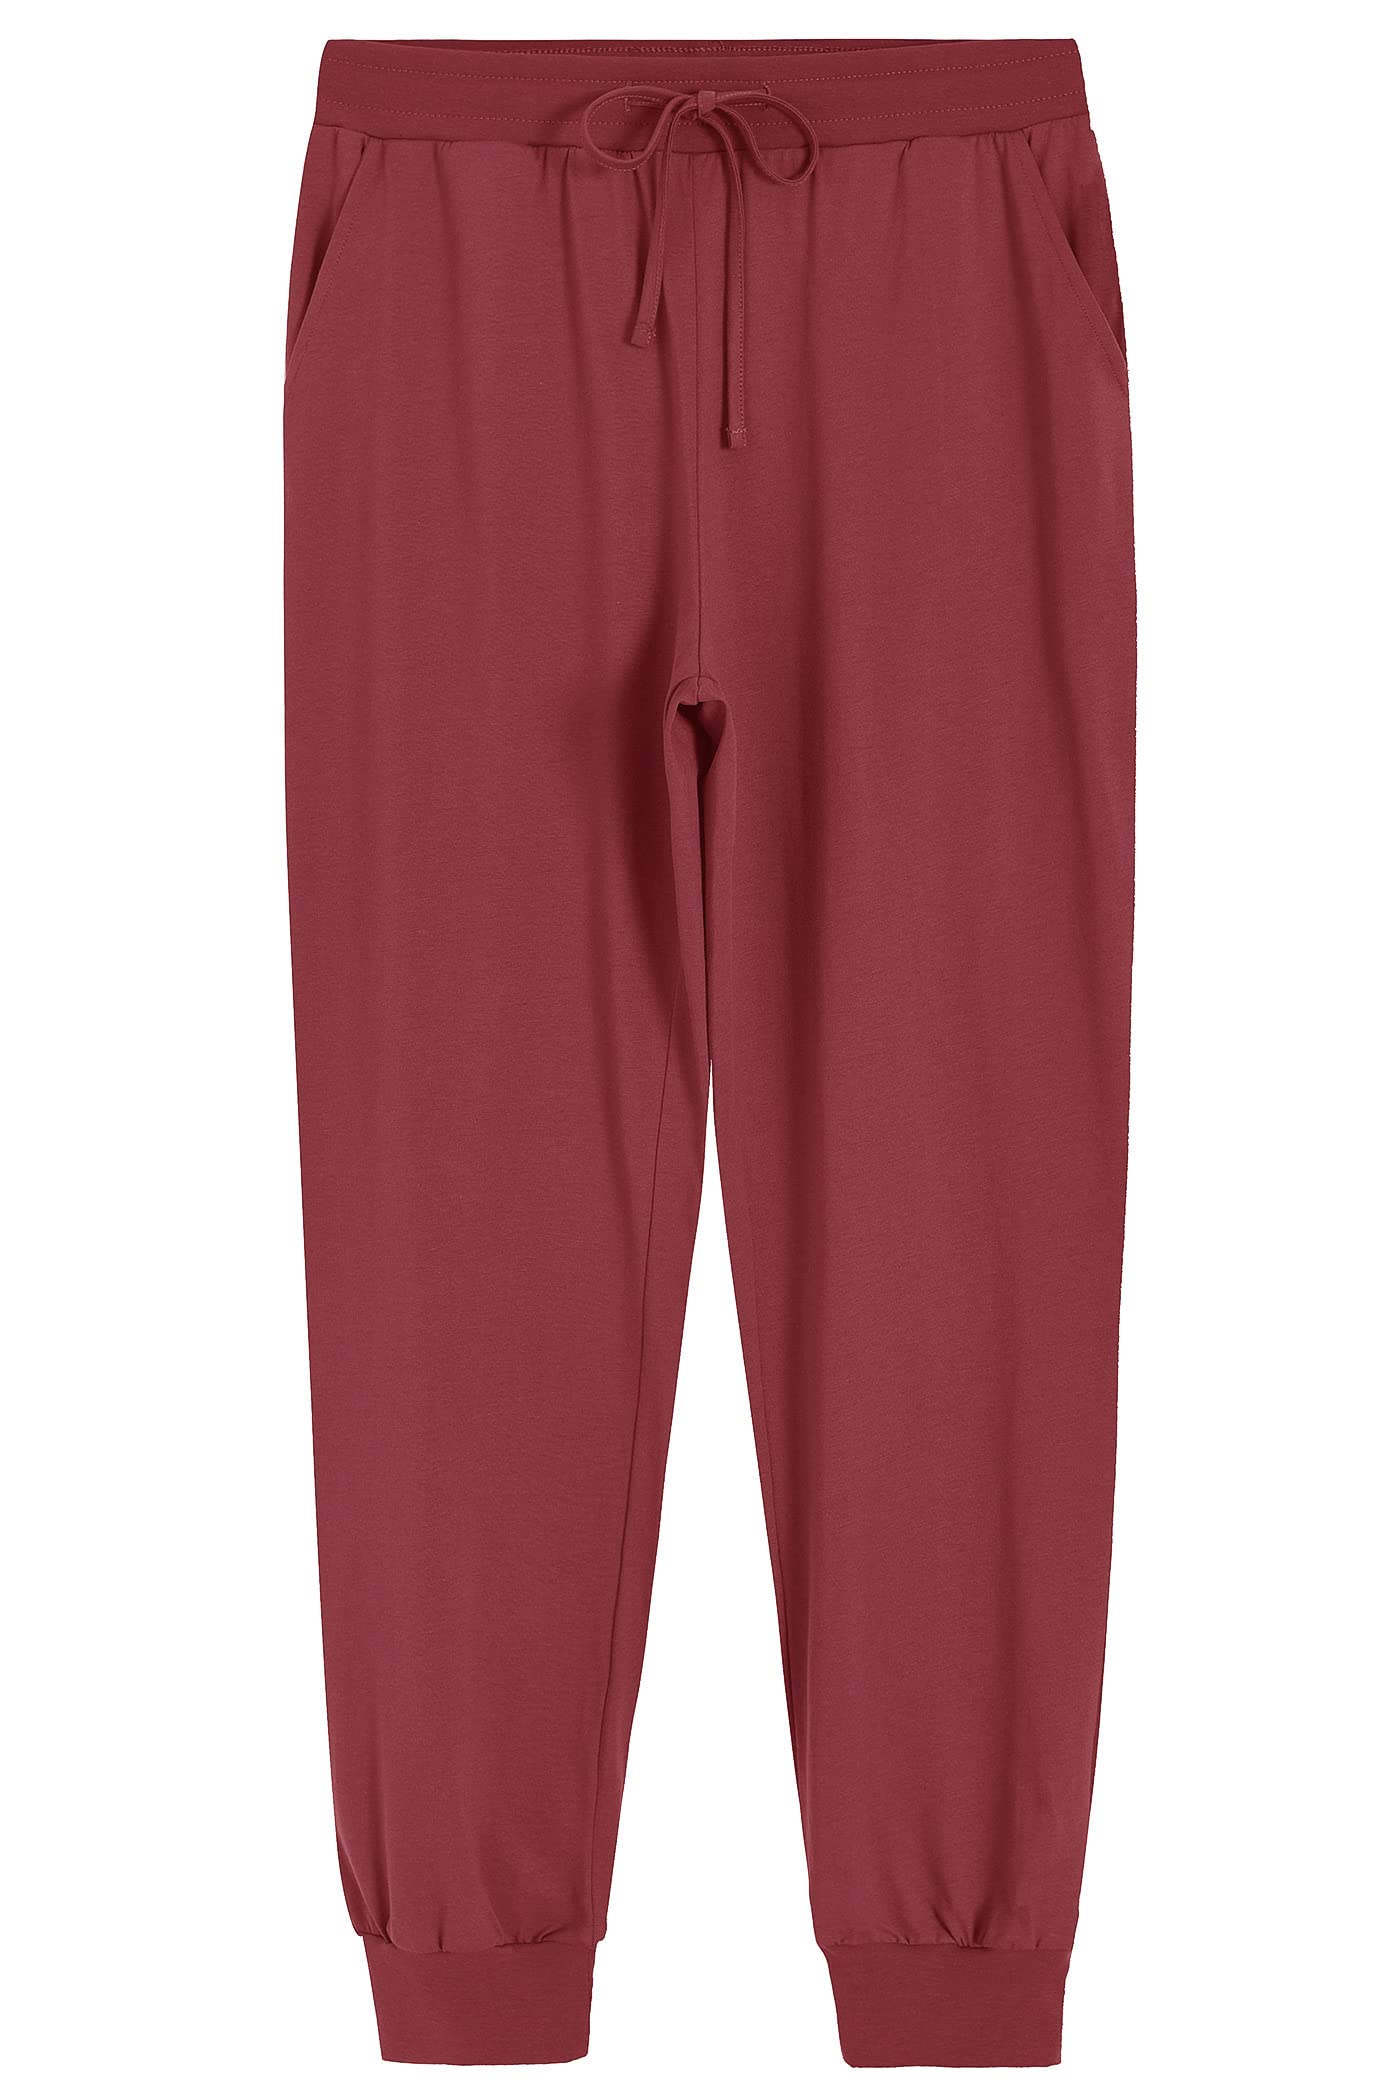 Women's Cotton Pajama Joggers Knit Lounge Pants – Latuza